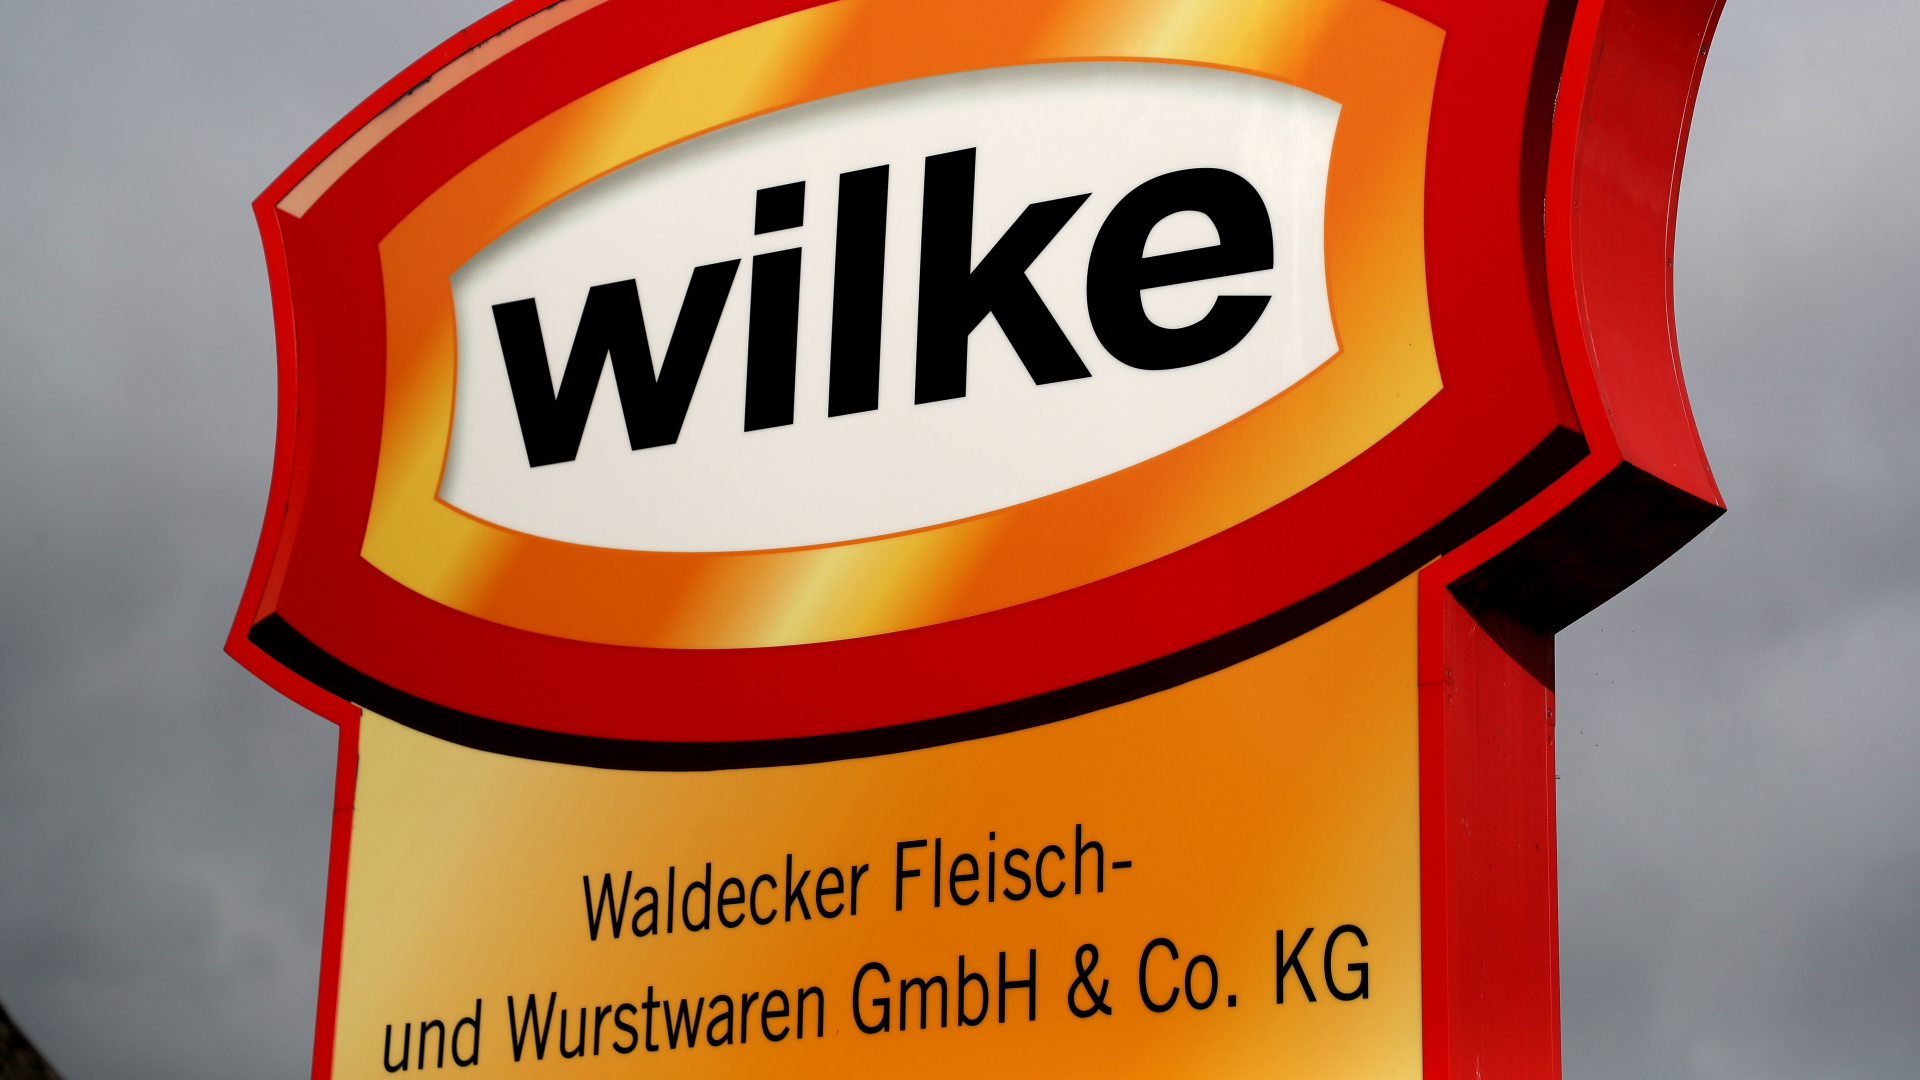 Wilke-Fleischfabrik im nordhessischen Twistetal | FRIEDEMANN VOGEL/EPA-EFE/REX